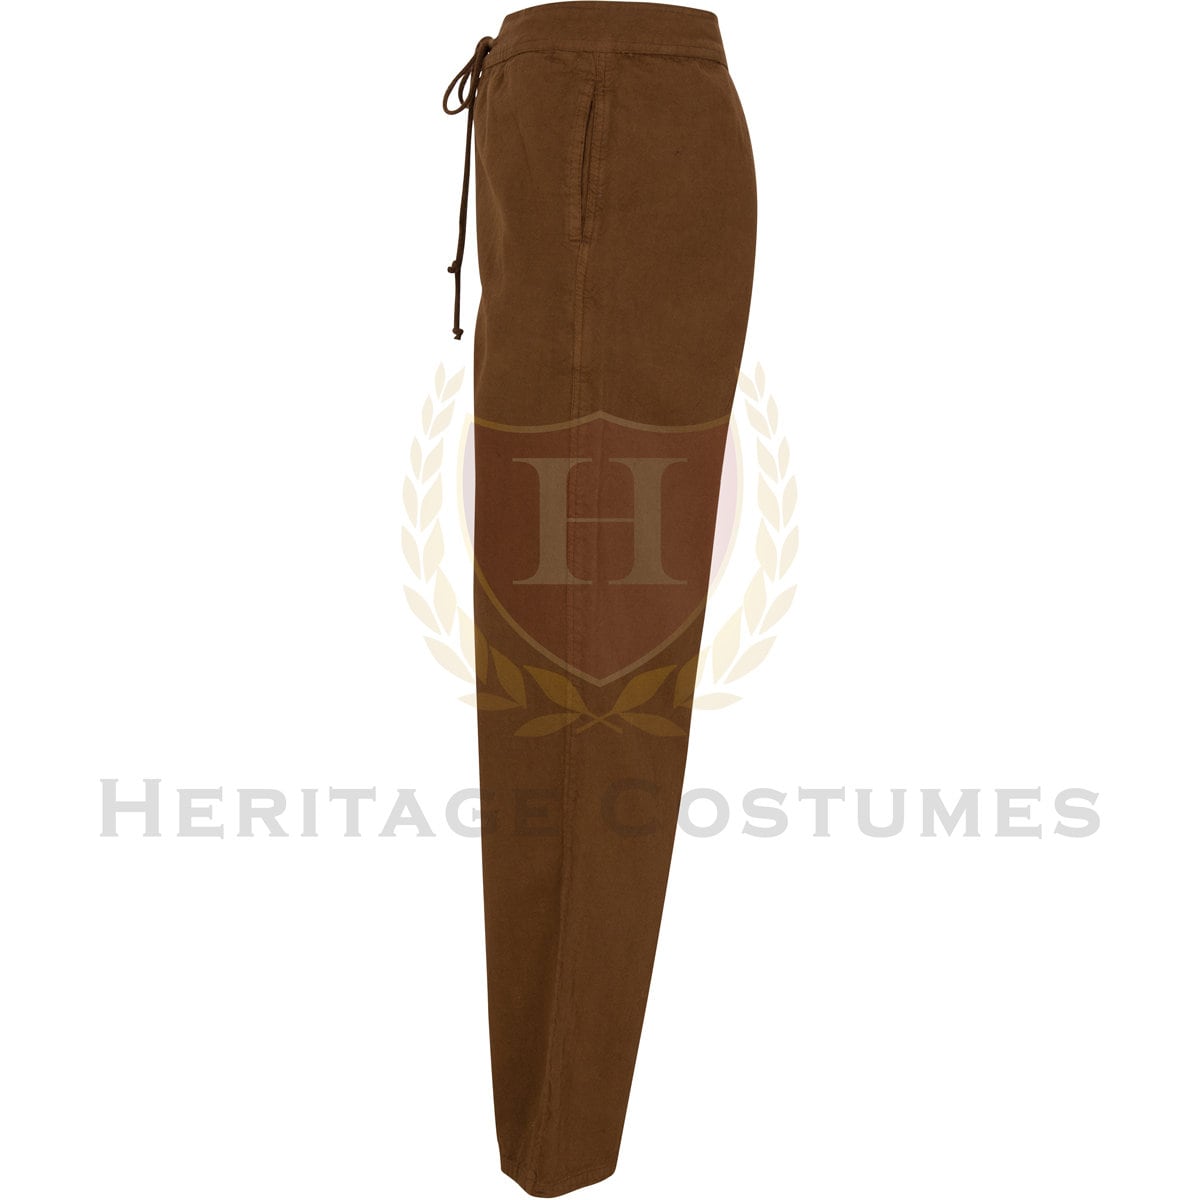 Men's Cotton Renaissance Pants/Medieval Trousers